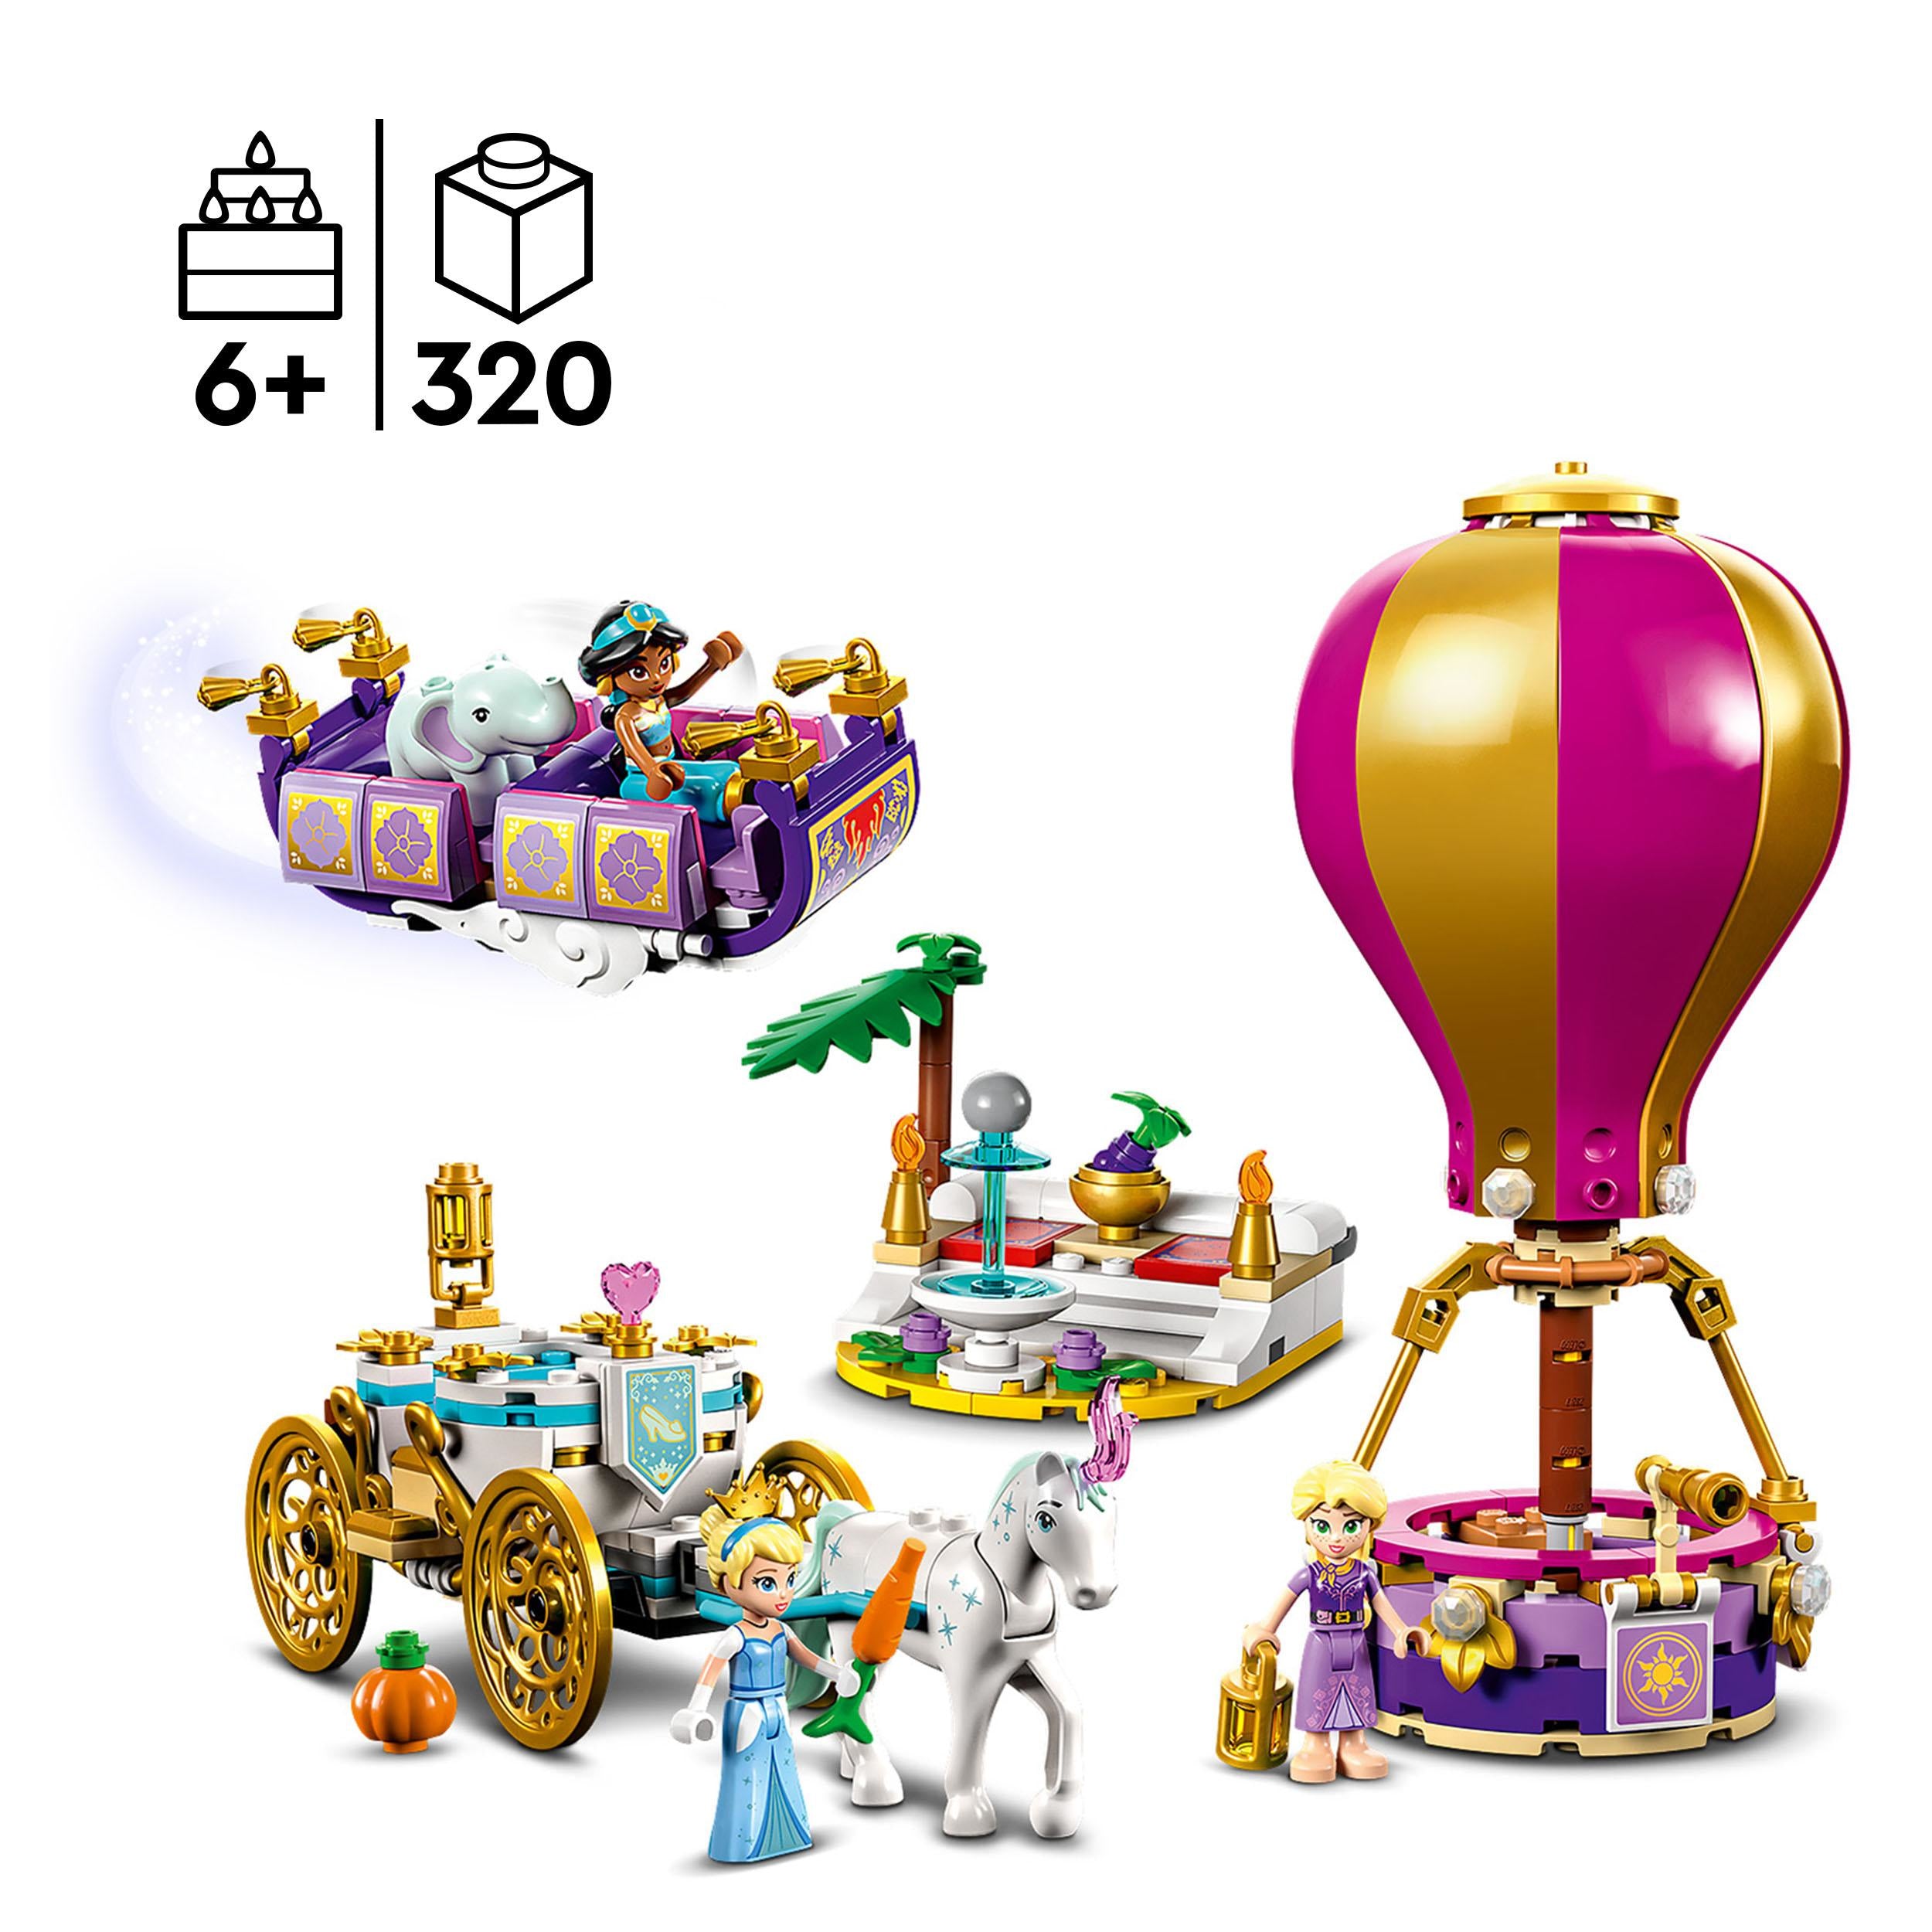 43216 LEGO Disney Princess - Il viaggio incantato della principessa